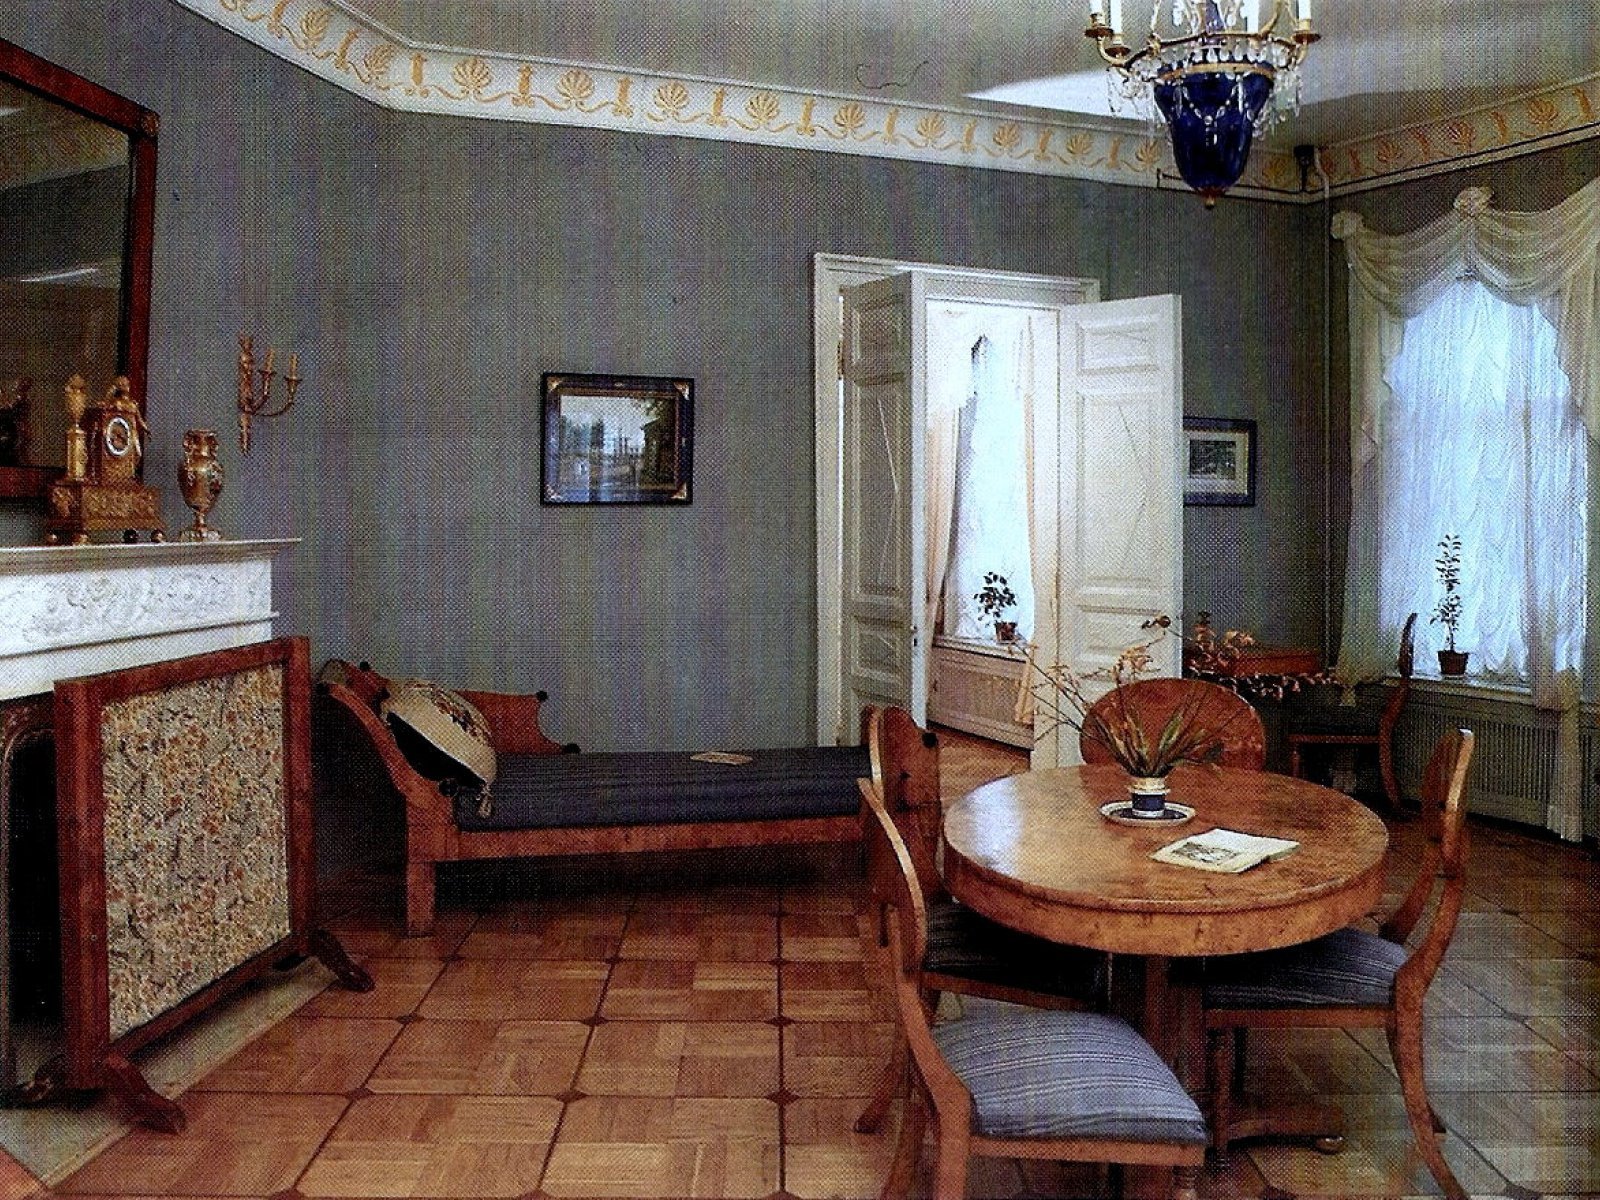 Пушкина 1 комната